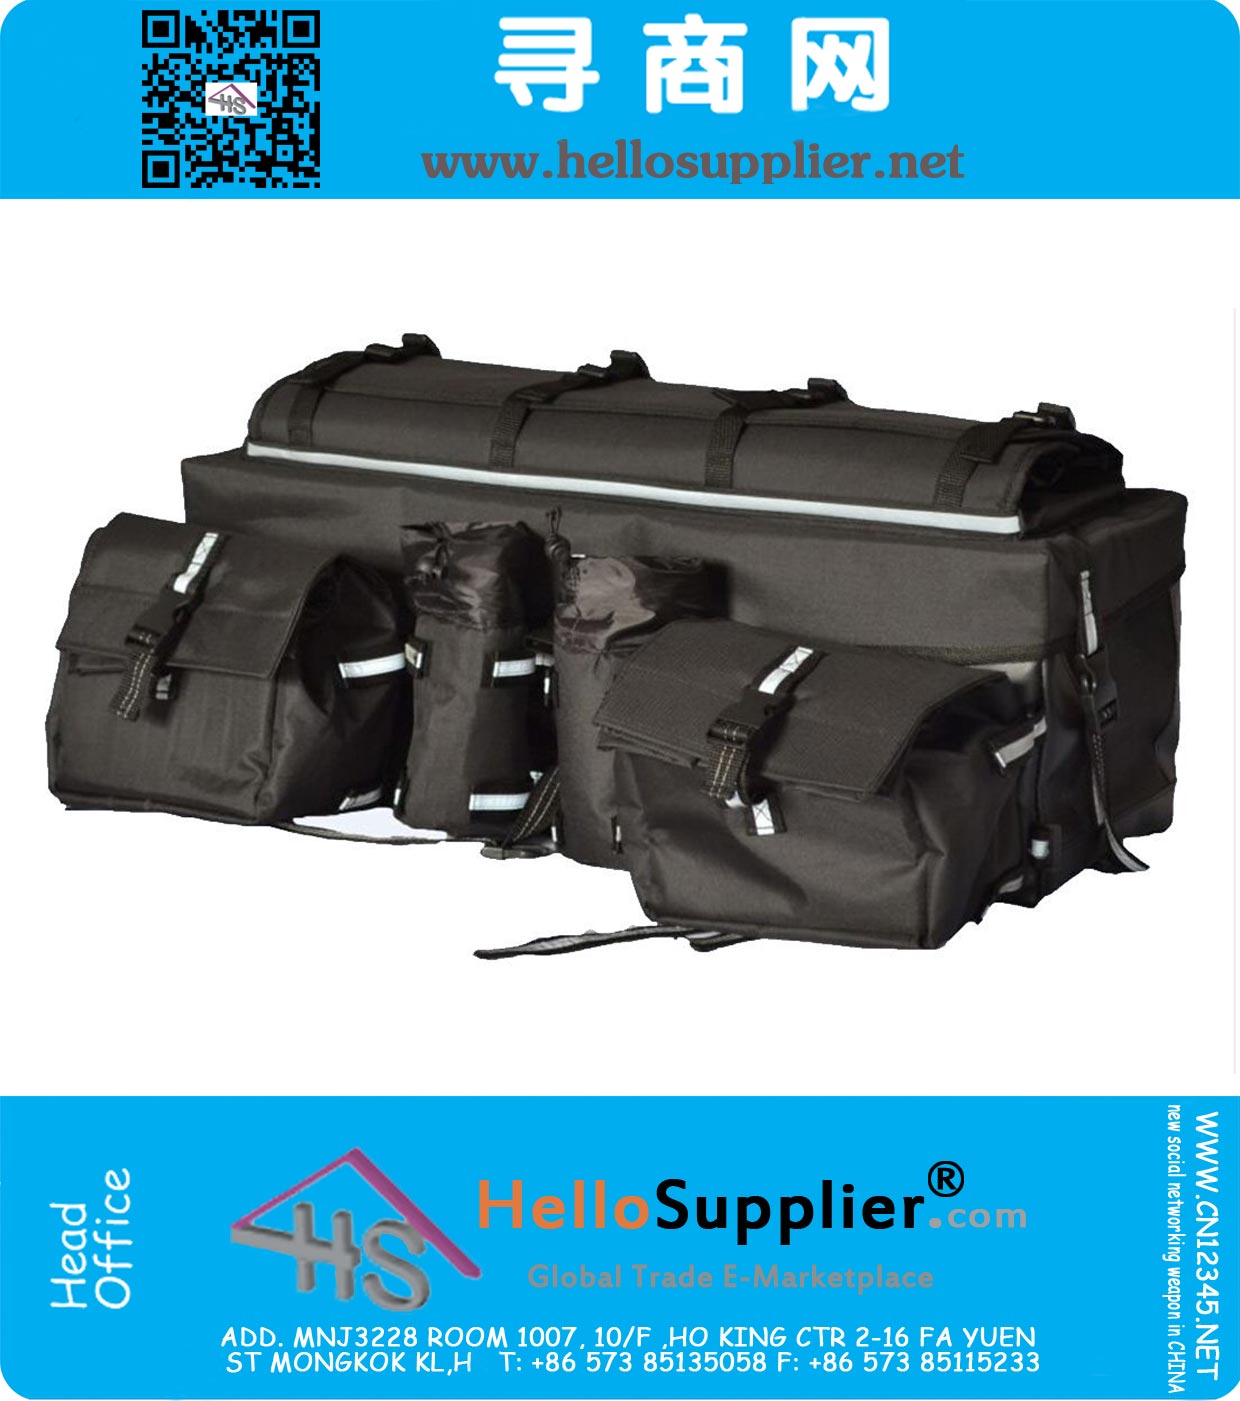 ATV Cargo Bag bagagedrager Gear tas gemaakt van 600D waterdichte stof met Bovenbil Bungee Tie-Down Storage Padded-Bottom meerdere compartimenten Black